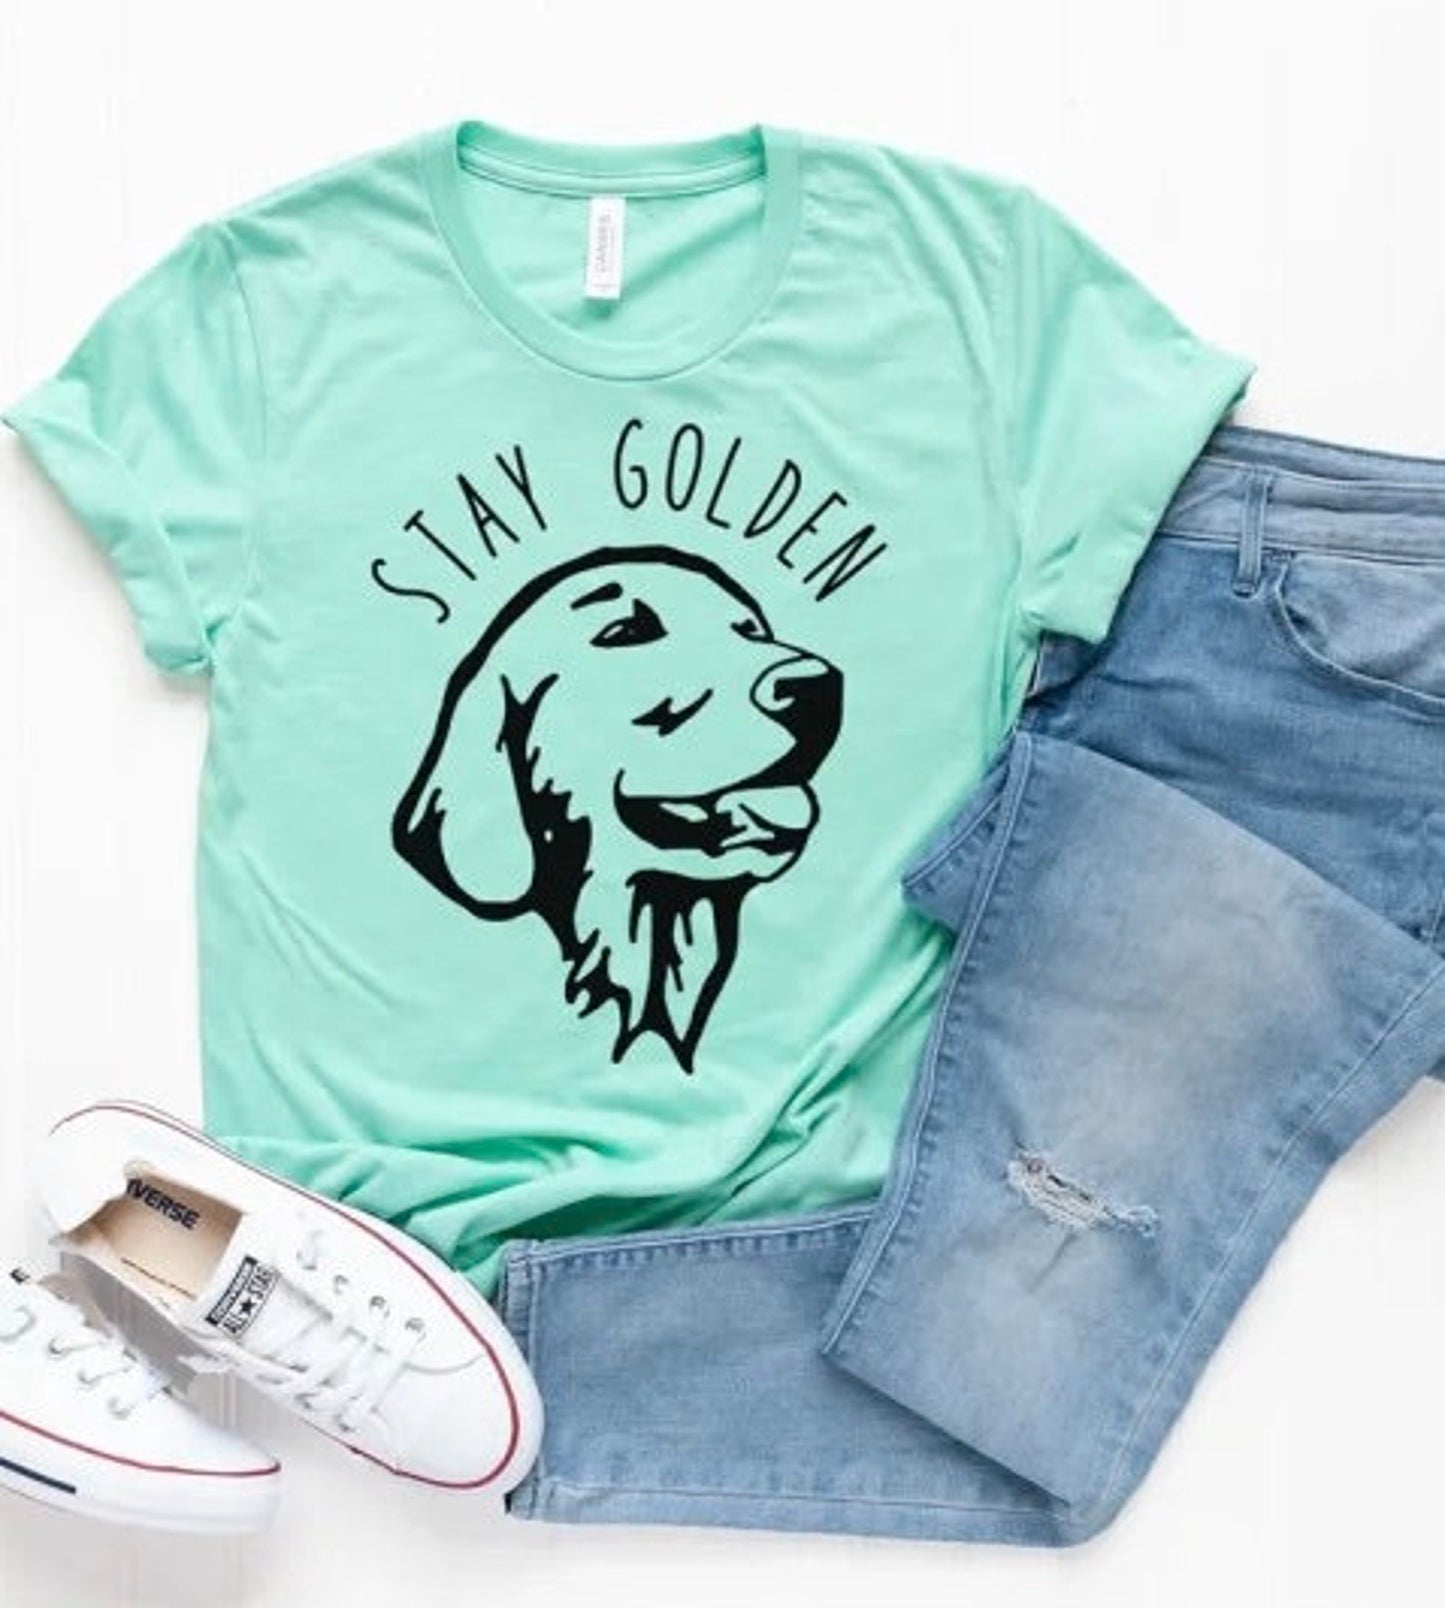 Stay Golden shirt| Golden owner shirt| Dog lover shirt| Dogs over dudes shirt